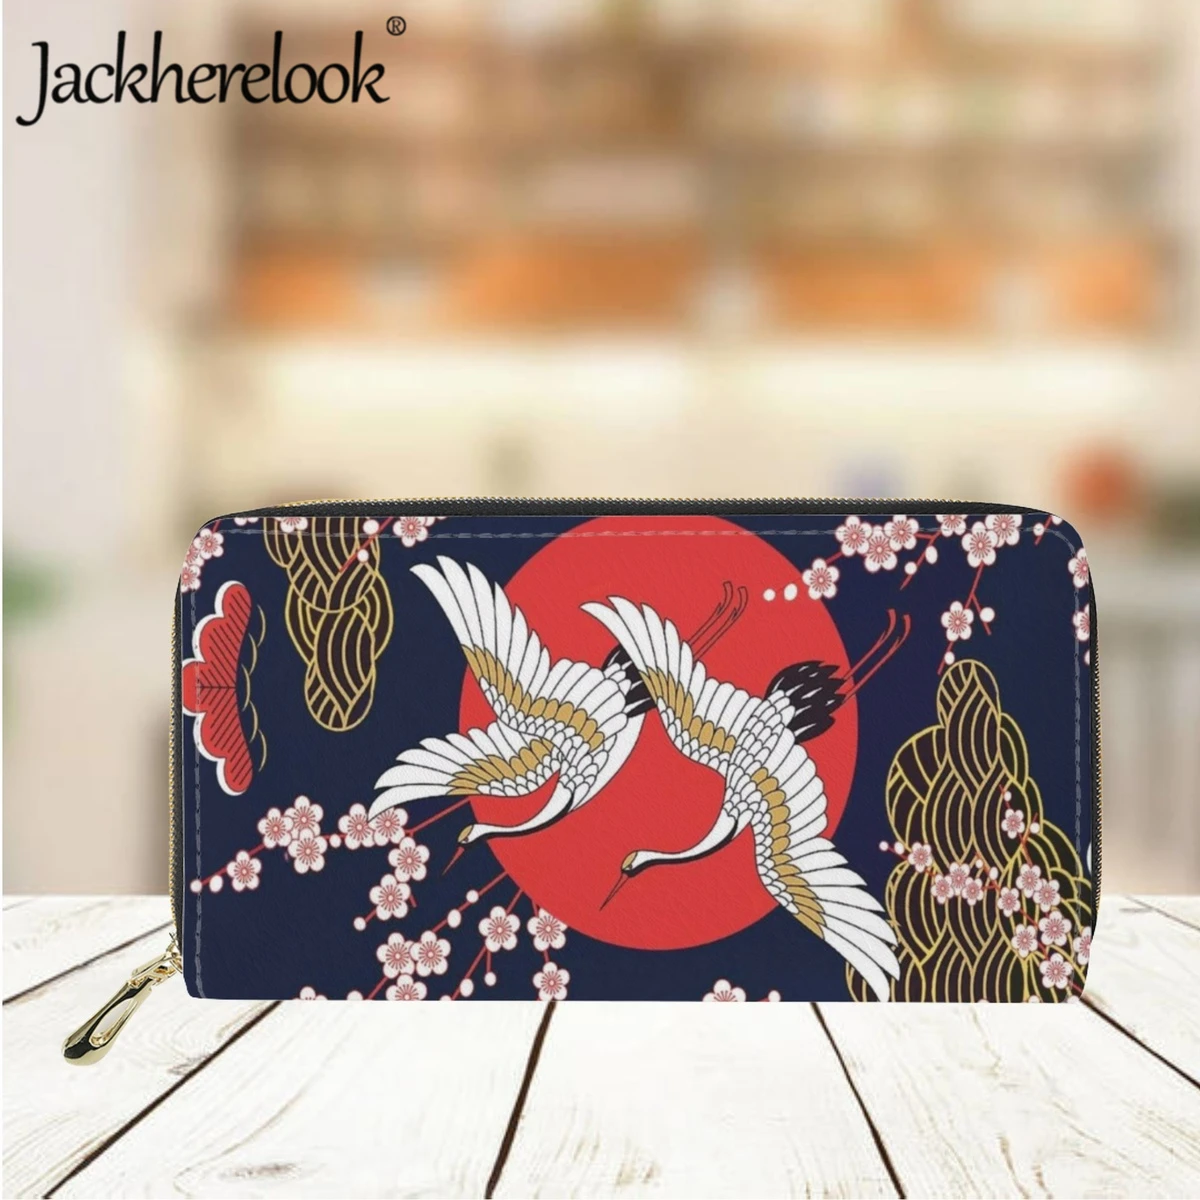 Jackherelook Японский стиль, кошелек с принтом Журавля и животных, женский модный Ретро-женский кожаный роскошный кошелек, держатель для банковских карт - 1